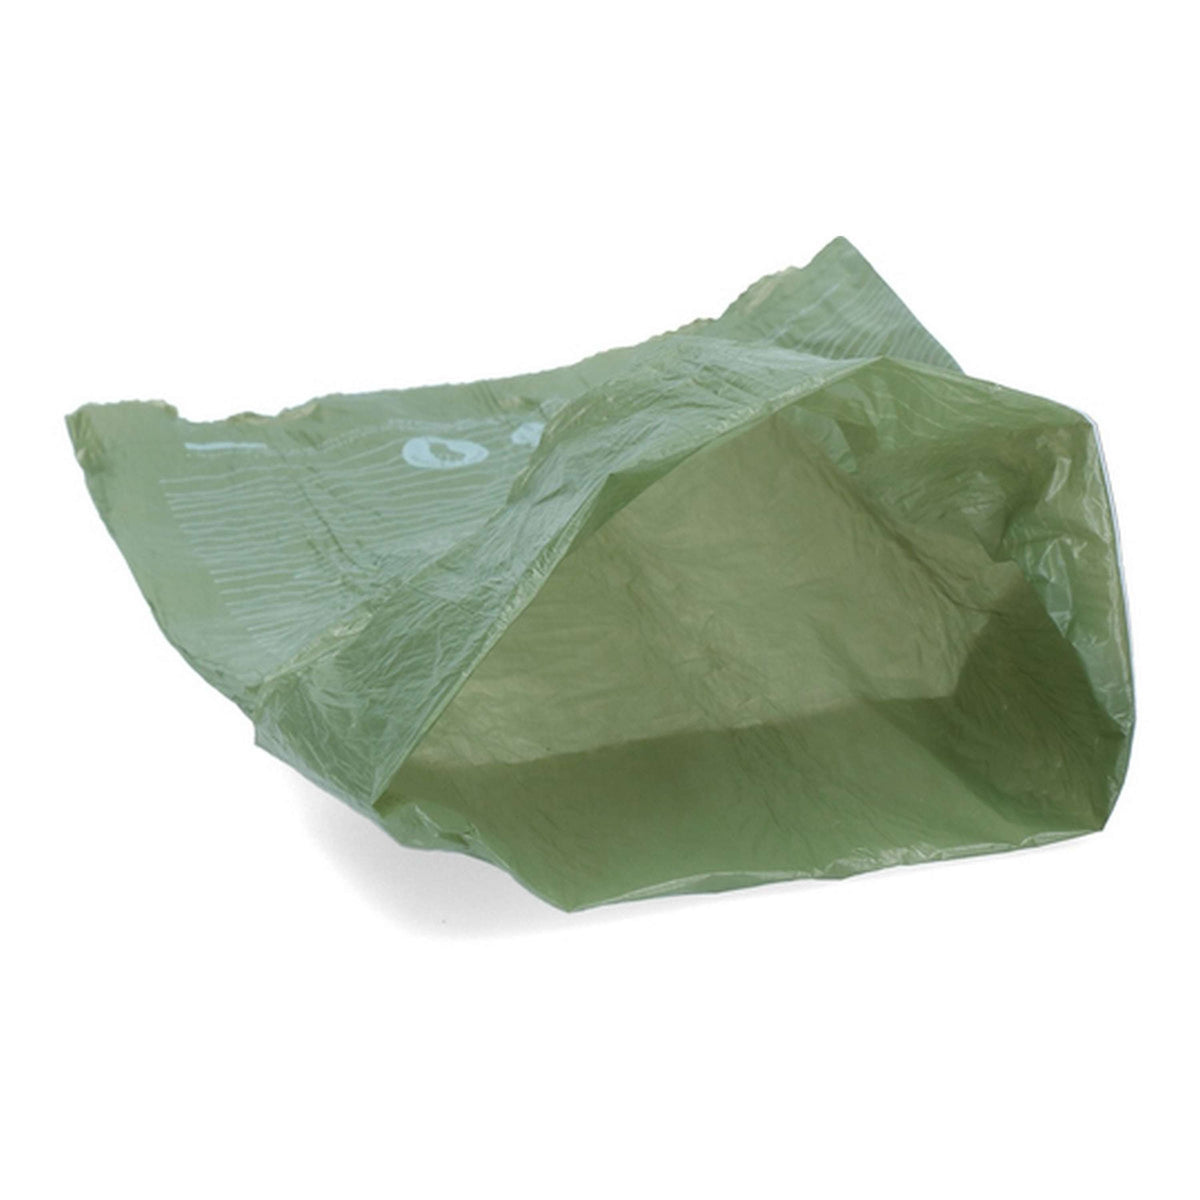 Poopygo Tissue Box Eco Friendly